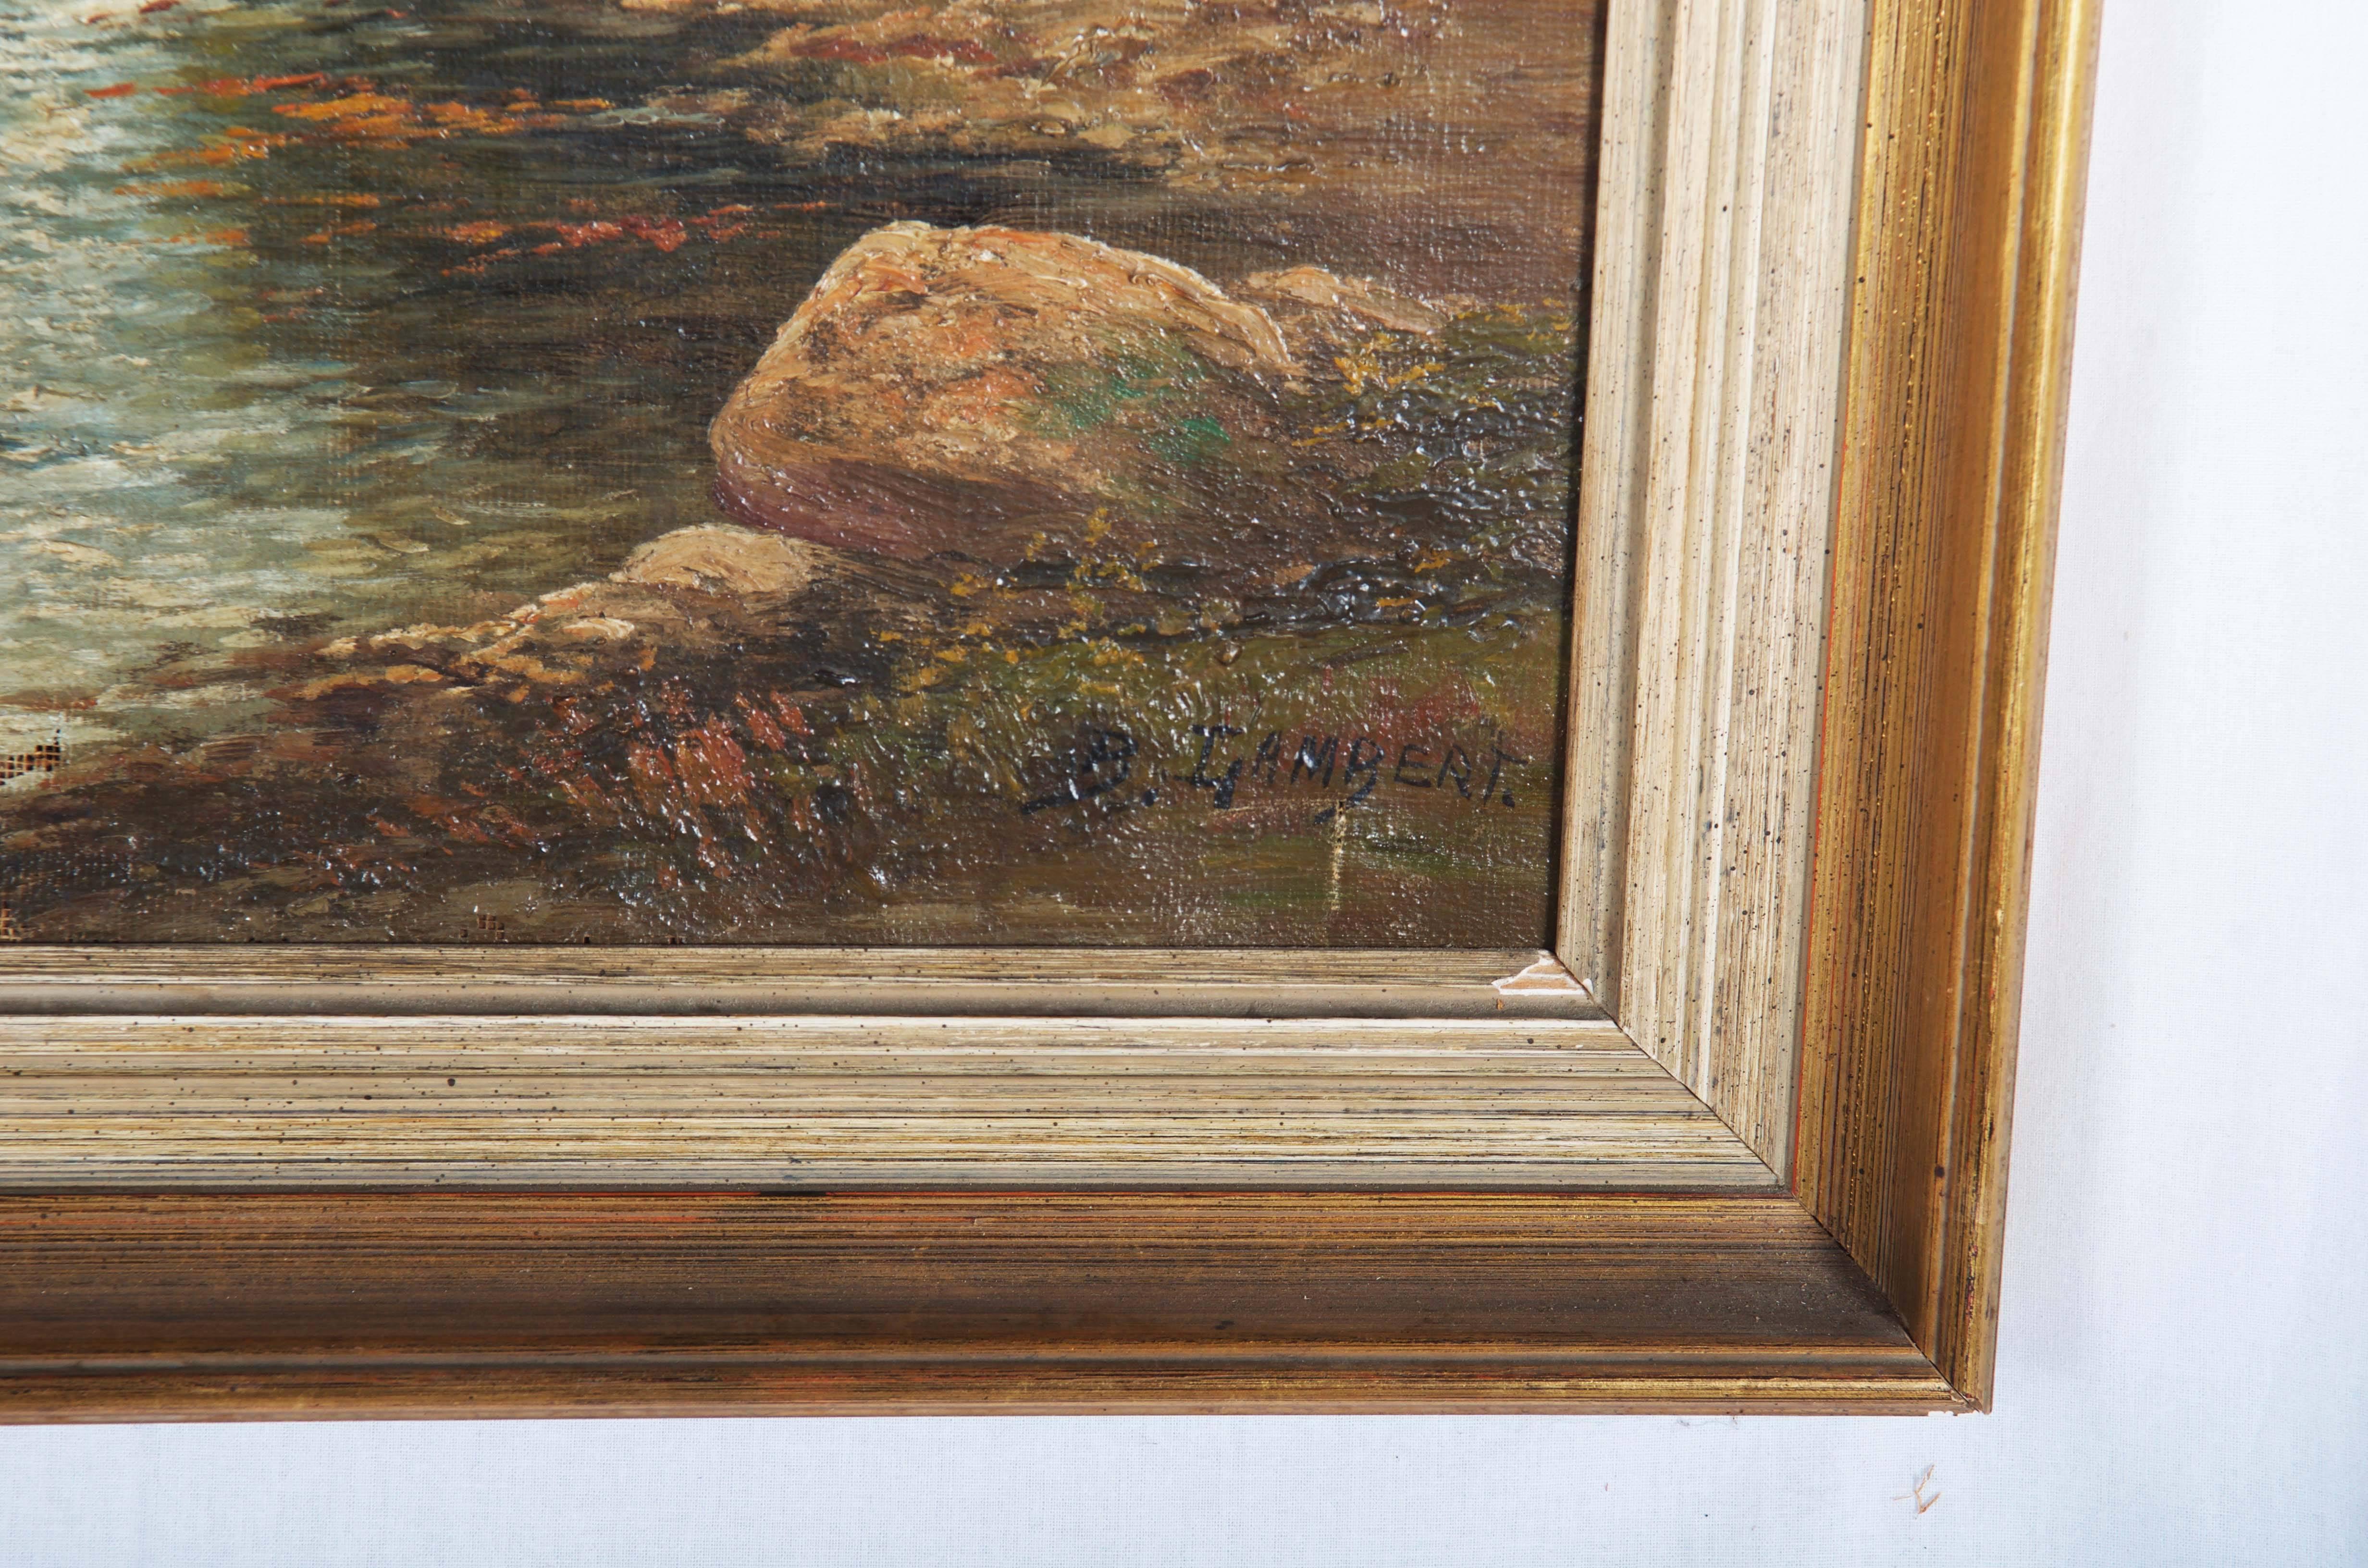 Ölgemälde von Kal Kaufmann (signiert B. Lambert (1843 - 1901))
Herbstlandschaft (Waldszene) mit Fluss
Der äußere Rahmen misst 92 x 45 cm. Das eigentliche Bild ist 82 x 35cm groß. Kleine Schäden sollten behoben werden.
  